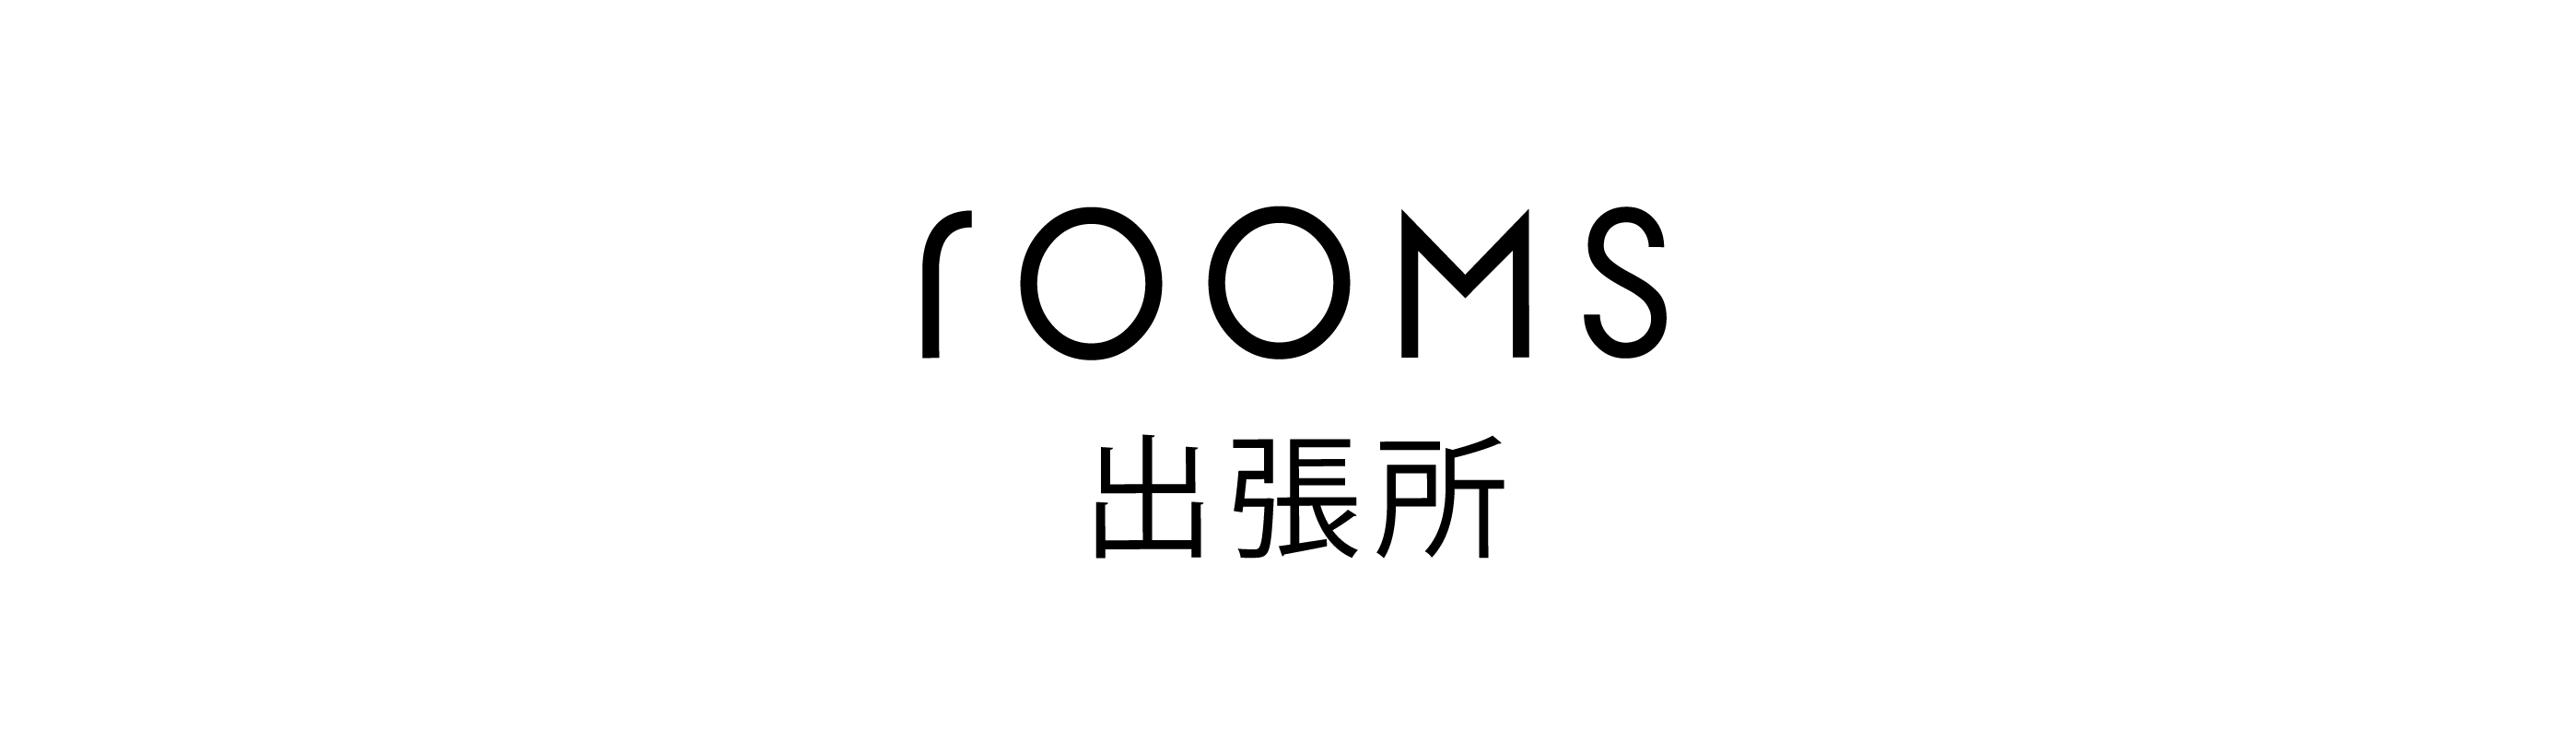 5日間の旅するマーケットイベント「rooms JOURNEY 01」2021年7月1日(木) 〜 5日(月) 、阪急うめだ本店9Fで開催のサブ画像10